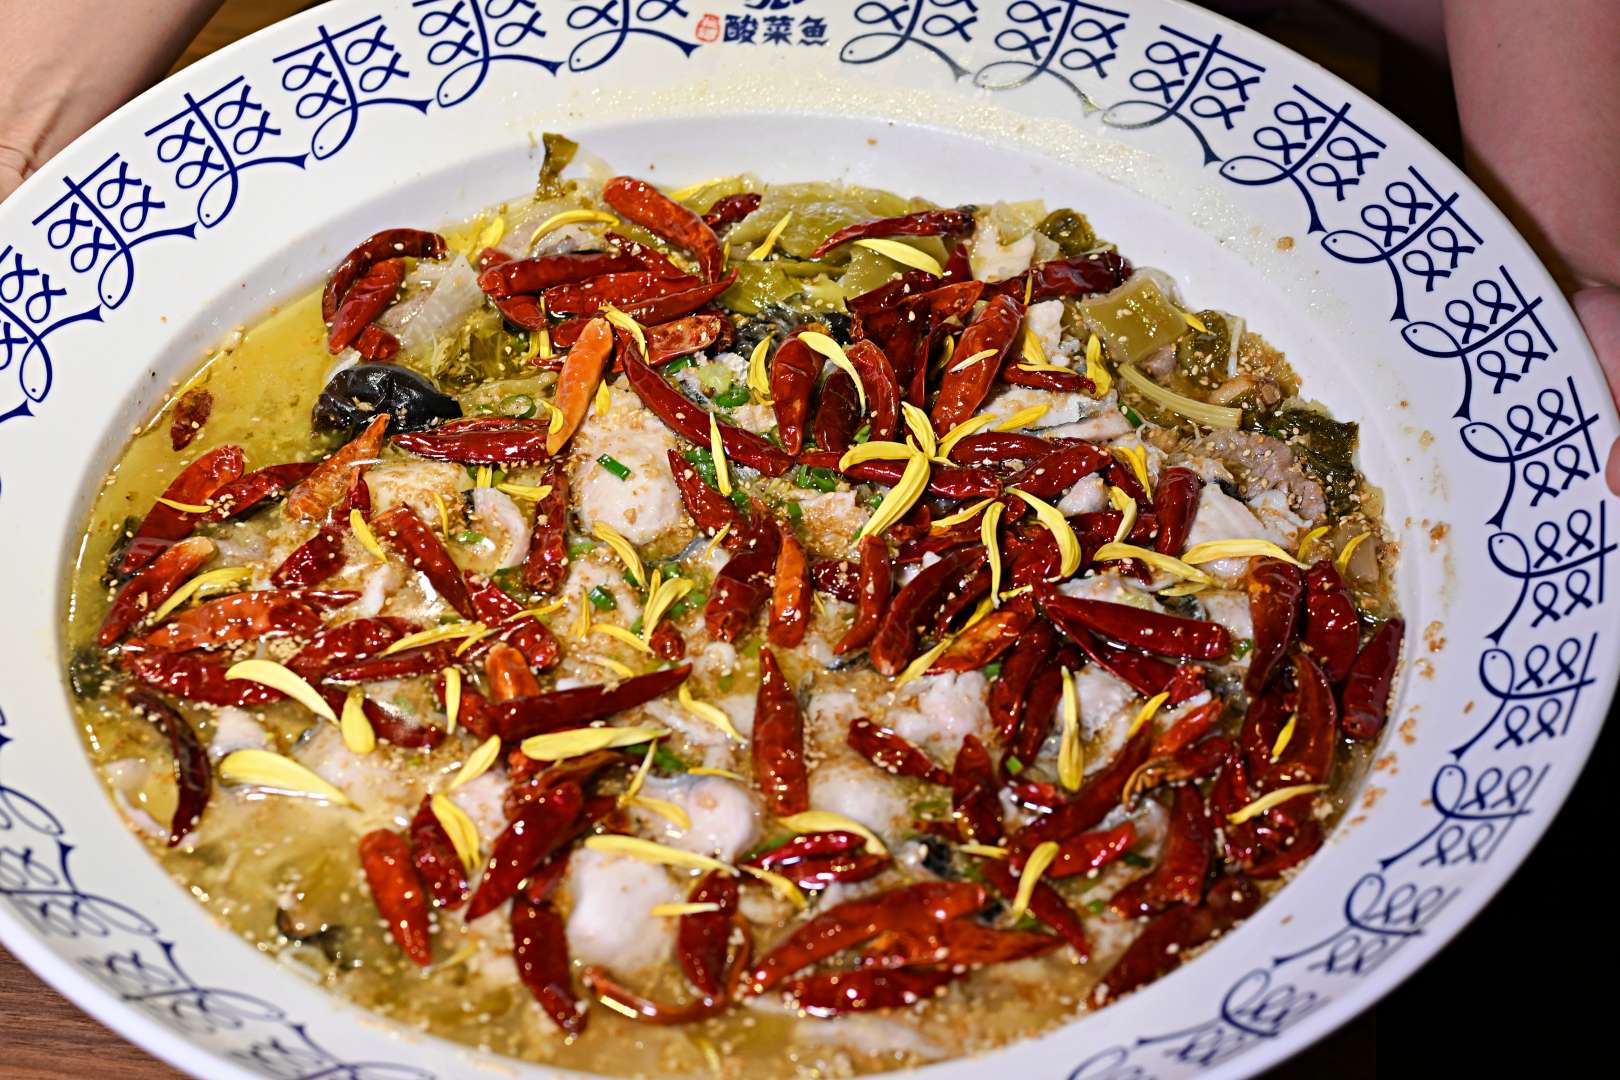 刁民酸菜魚, 刁民酸菜魚菜單, 刁民酸菜魚推薦, 101世貿美食